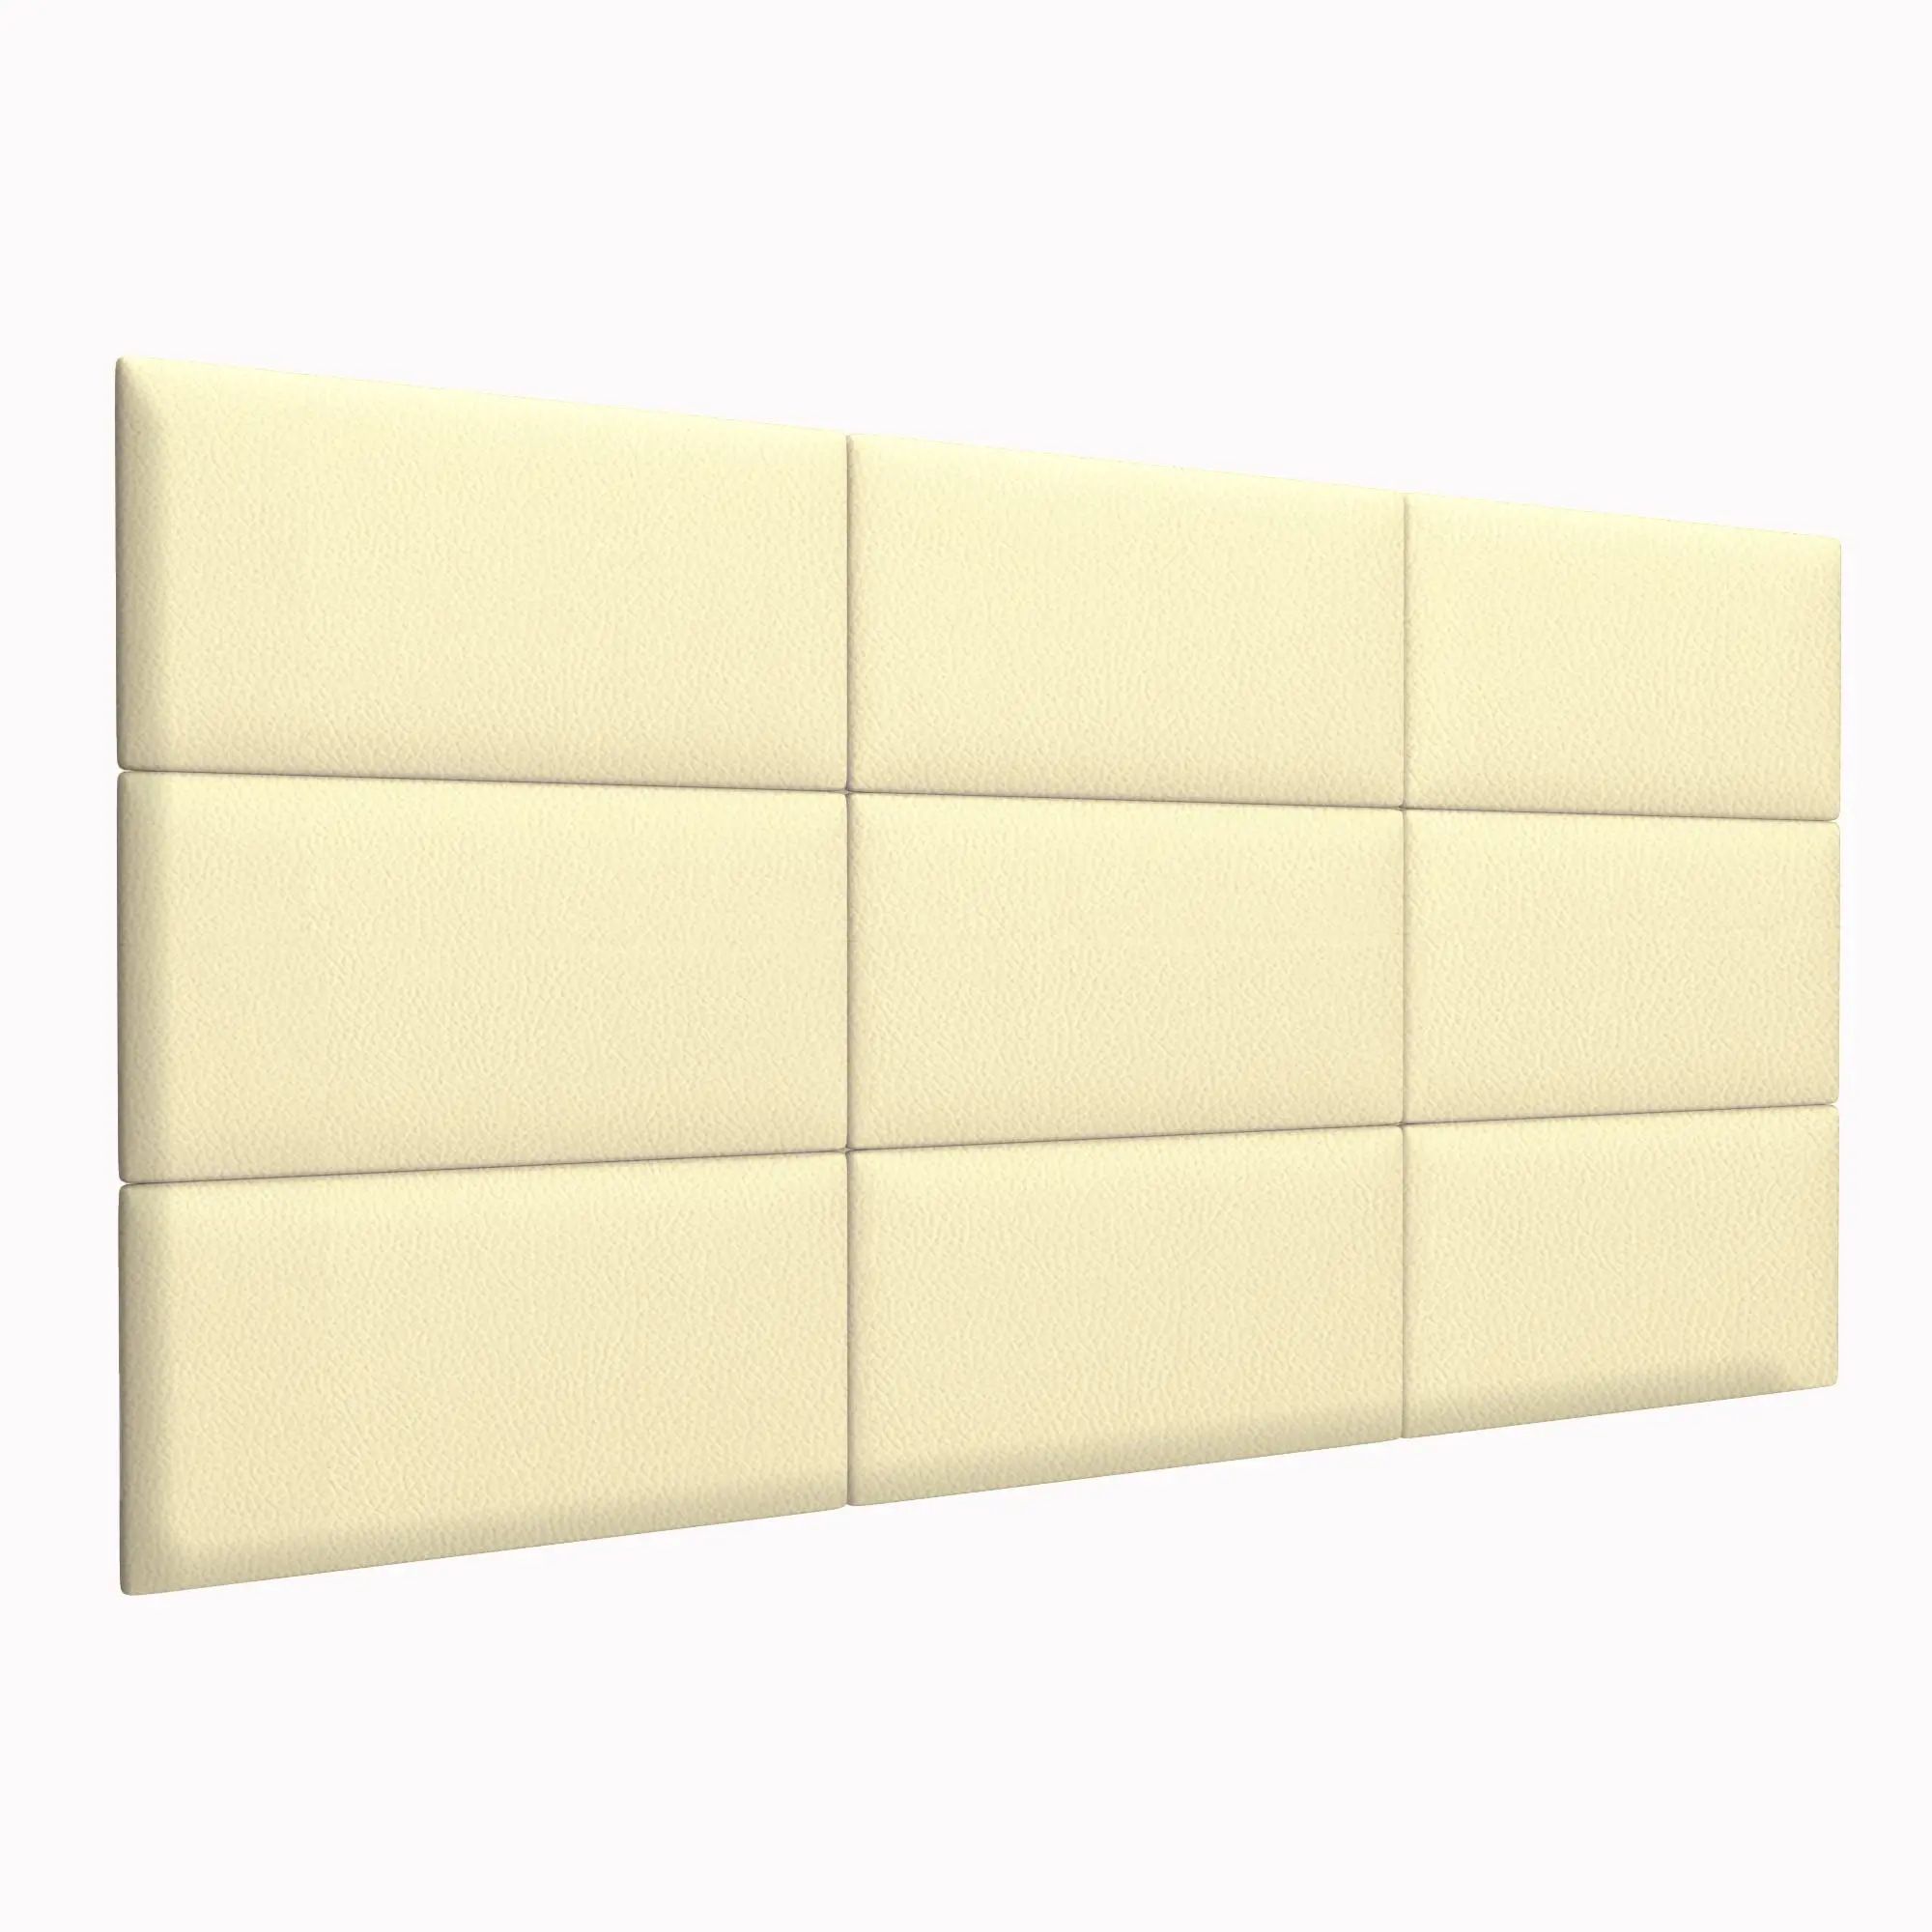 Стеновая панель Eco Leather Vanilla 30х60 см 2 шт.